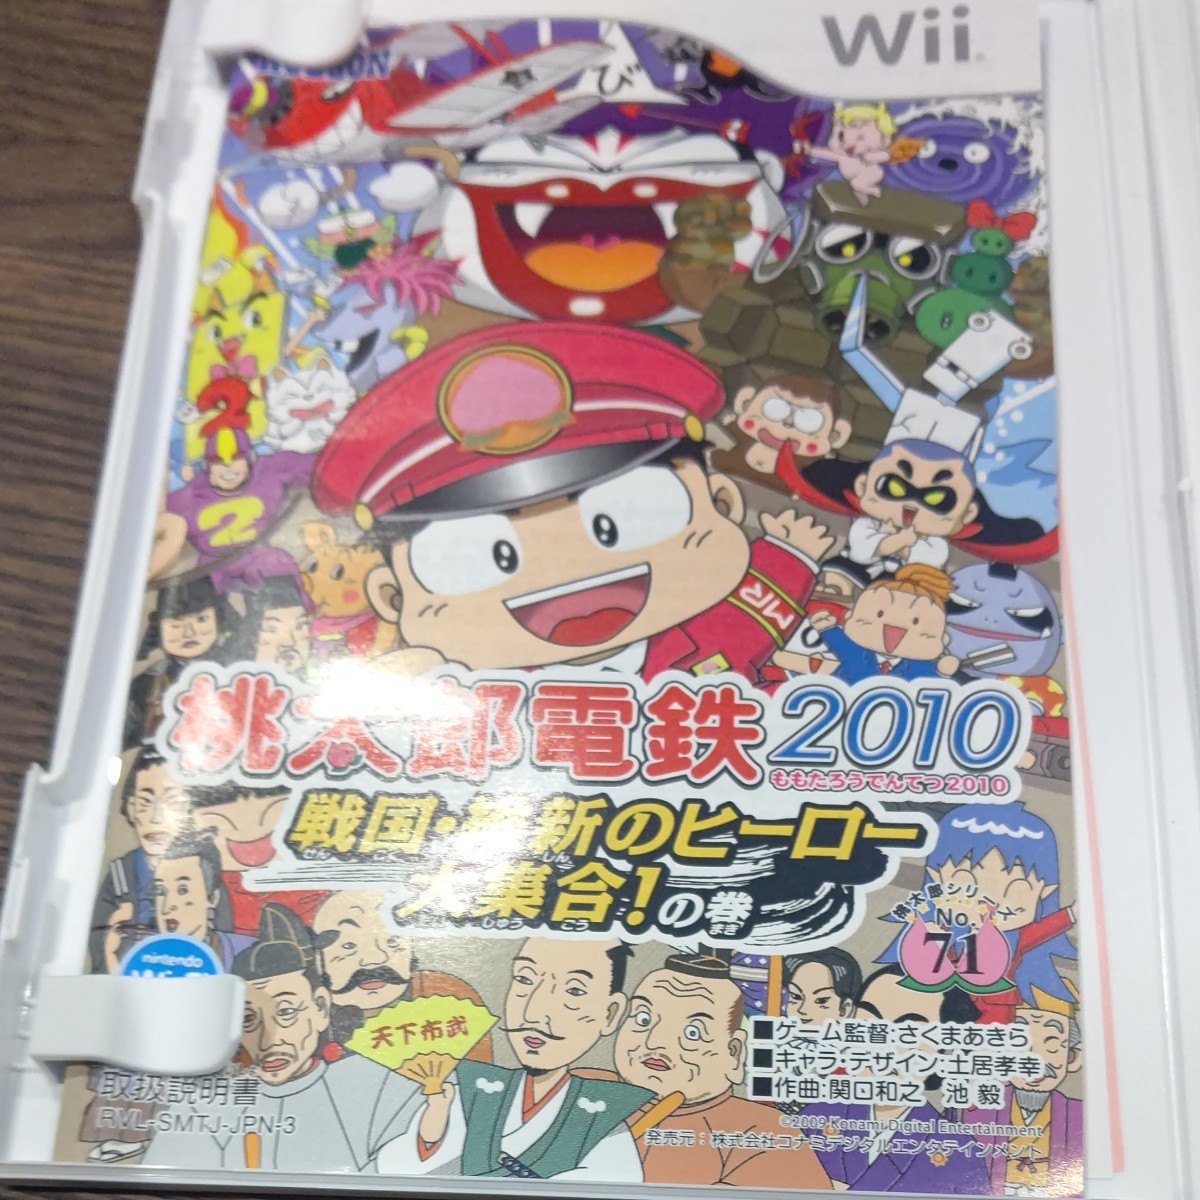 桃太郎電鉄2010 戦国・ 維新のヒーロー大集合！ の巻  Wii ソフト 桃鉄